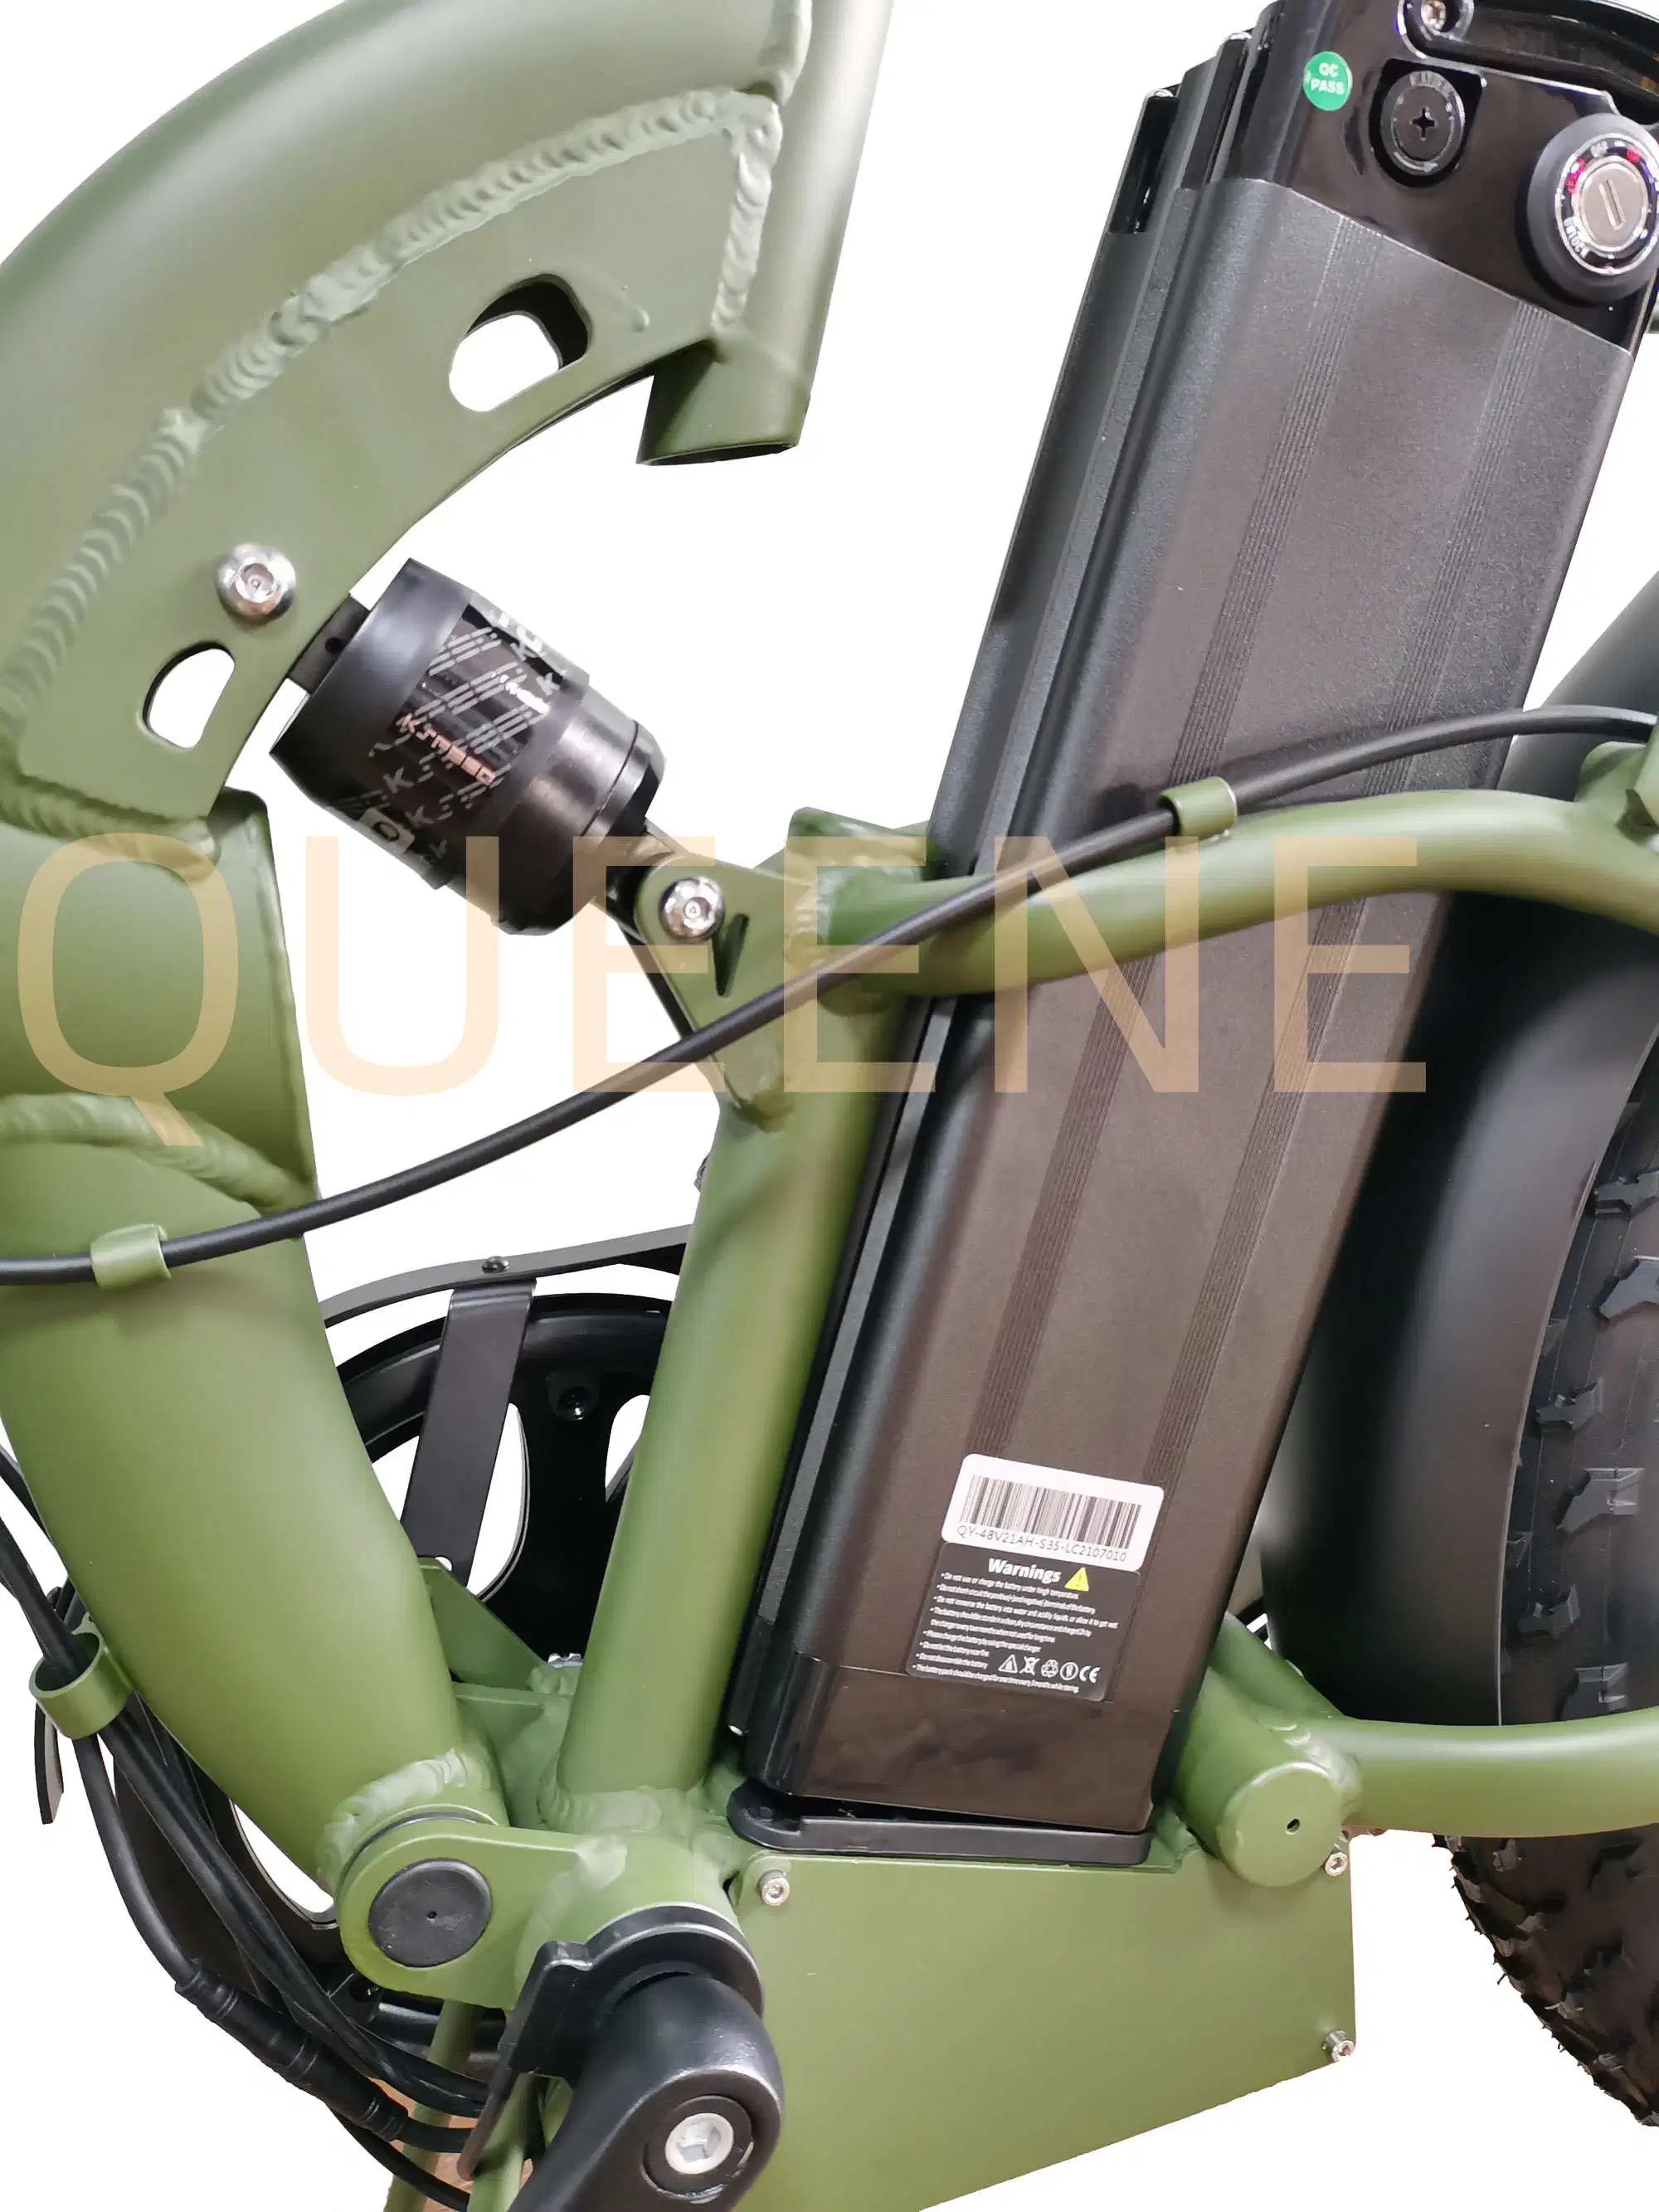 Rainha das/China Vintage barato 750W 1000W e Motor Ebike bicicletas de montanha de sujeira pneu gordura Aluguer de bicicleta eléctrica